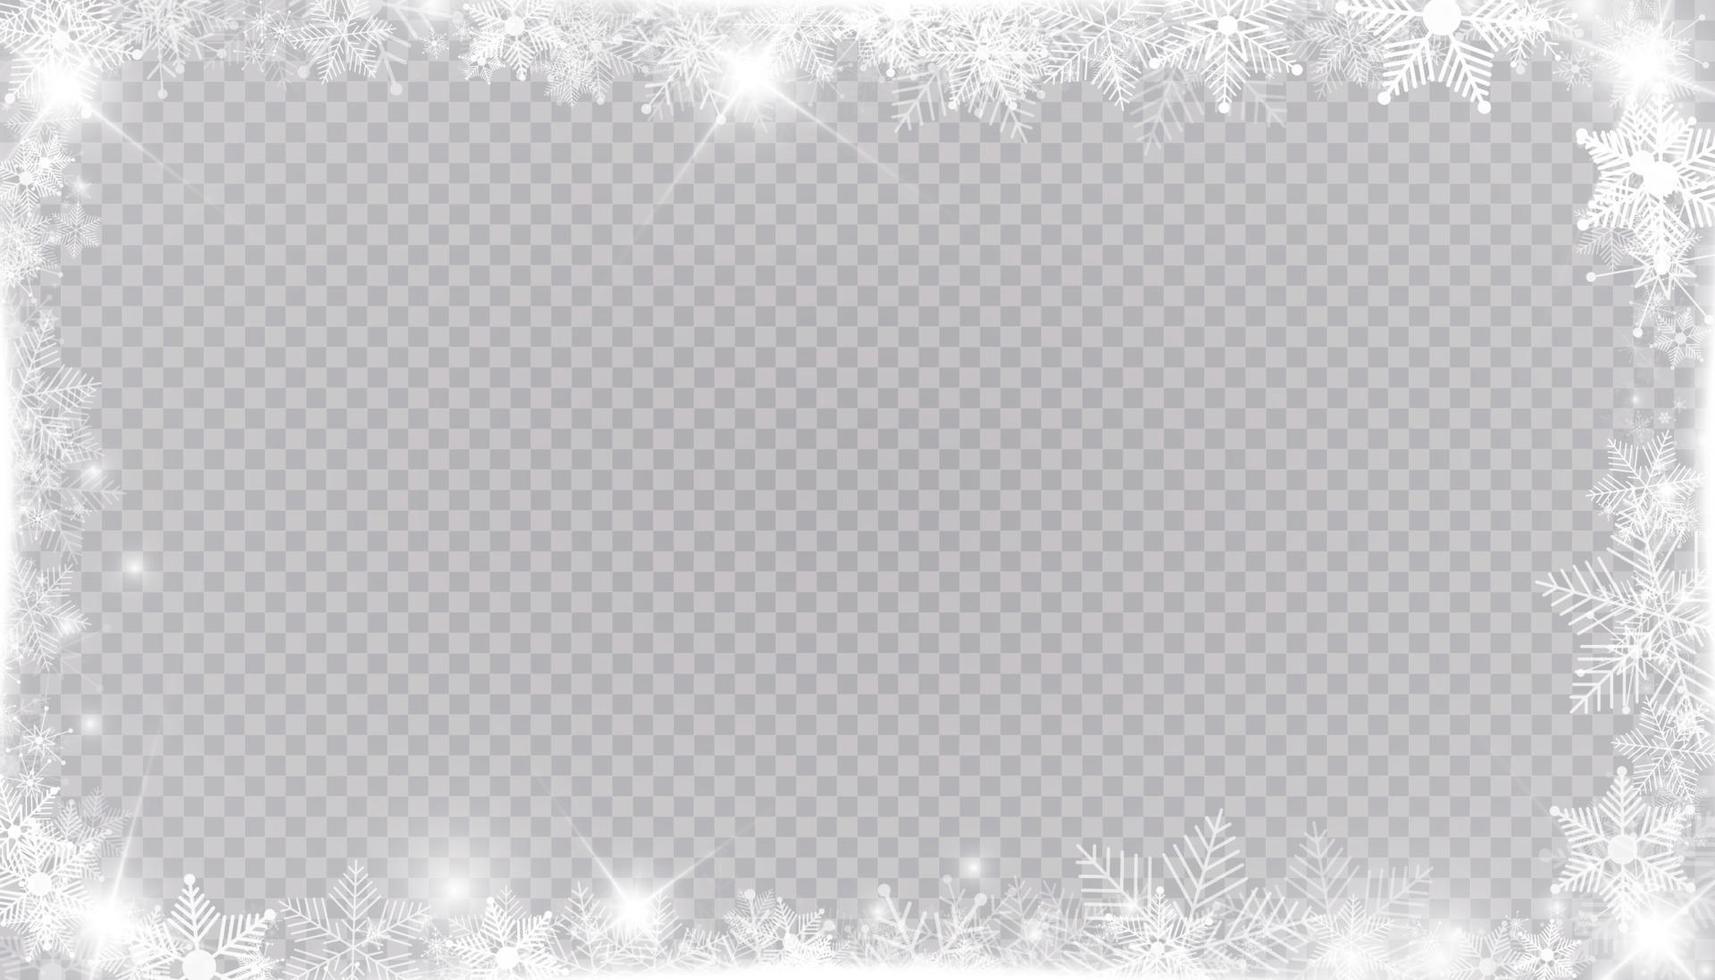 borde de marco rectangular de nieve de invierno con estrellas, destellos y copos de nieve. banner navideño festivo, tarjeta de felicitación de año nuevo, postal o invitación vector